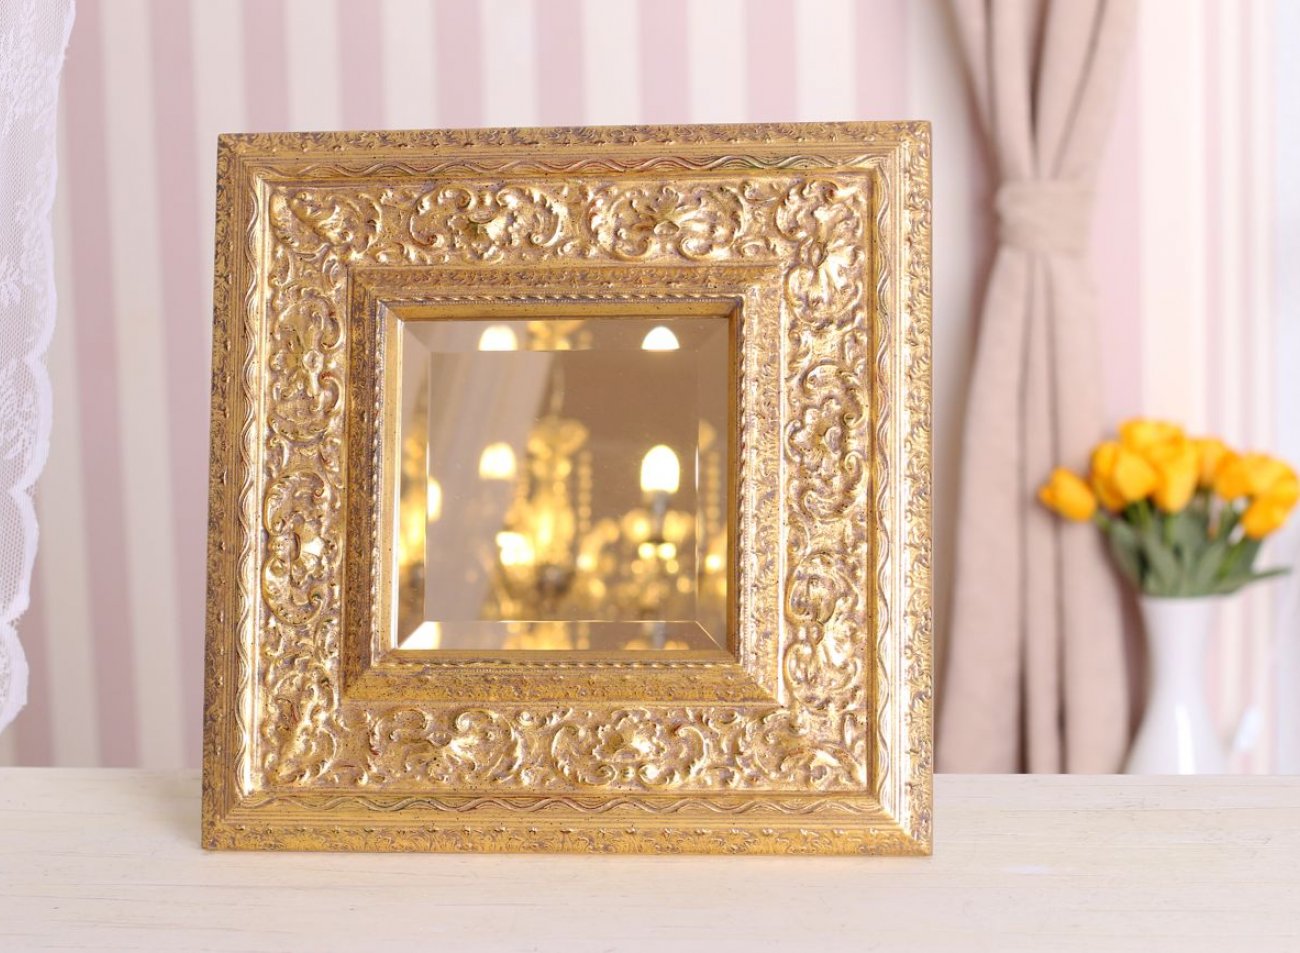 /WEB-galerie/21_Zrcadla/0001_Galerie/top/Luxusni-ornamentalni-zrcadlo-prave-zlato.jpg